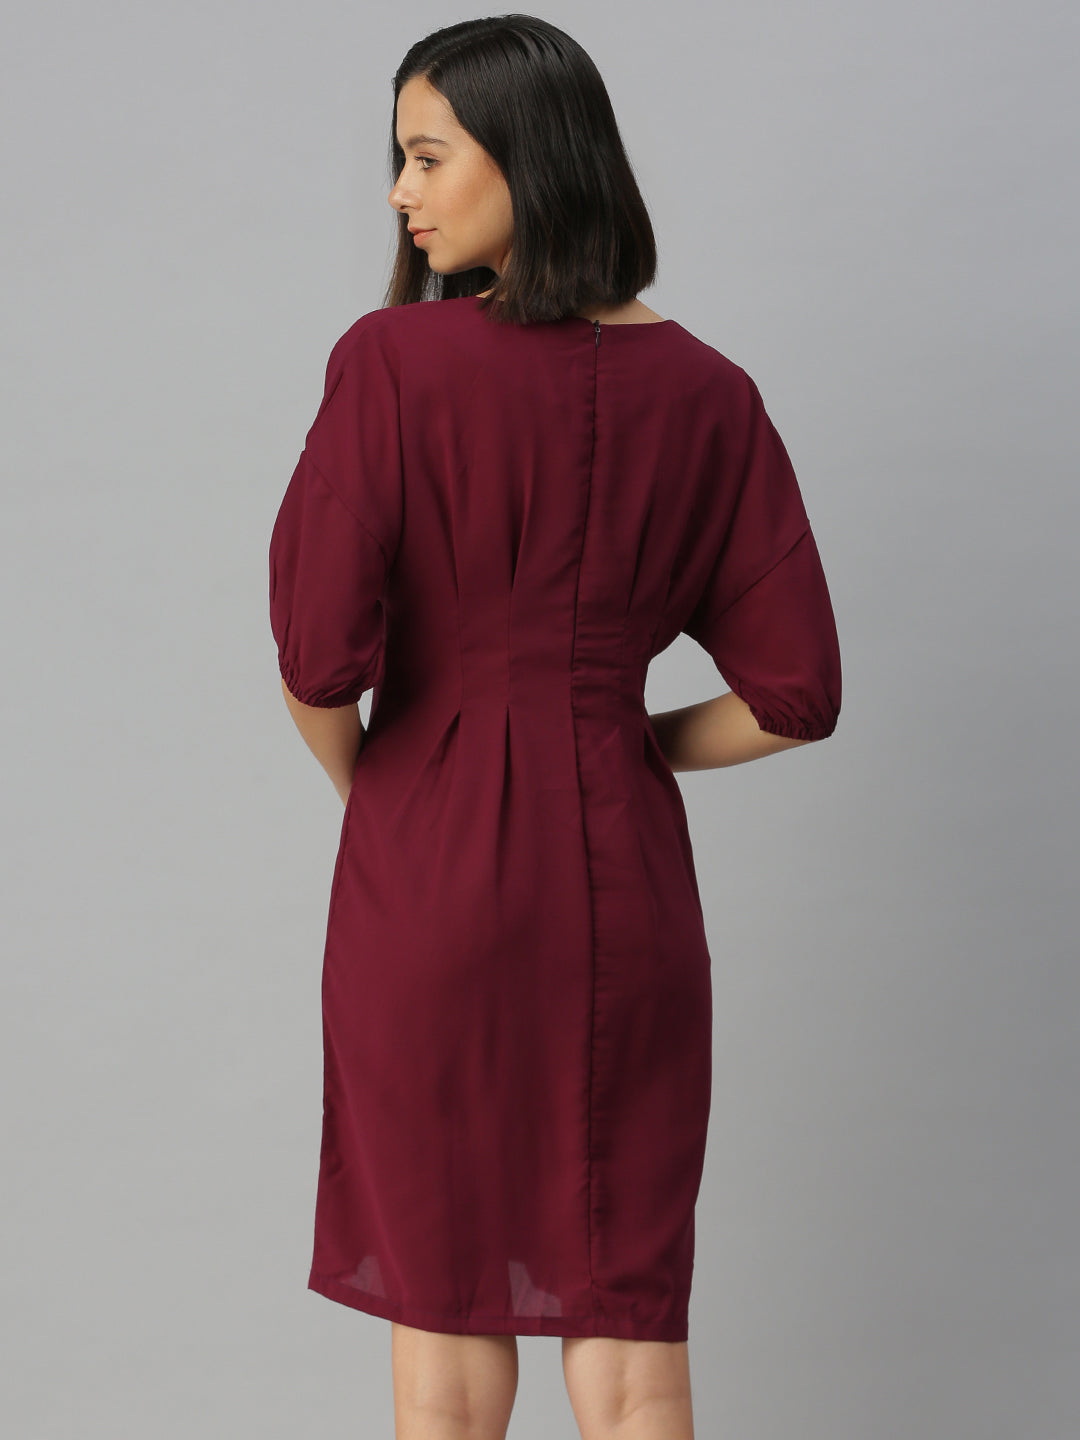 Women's Purple Solid A-Line Dress